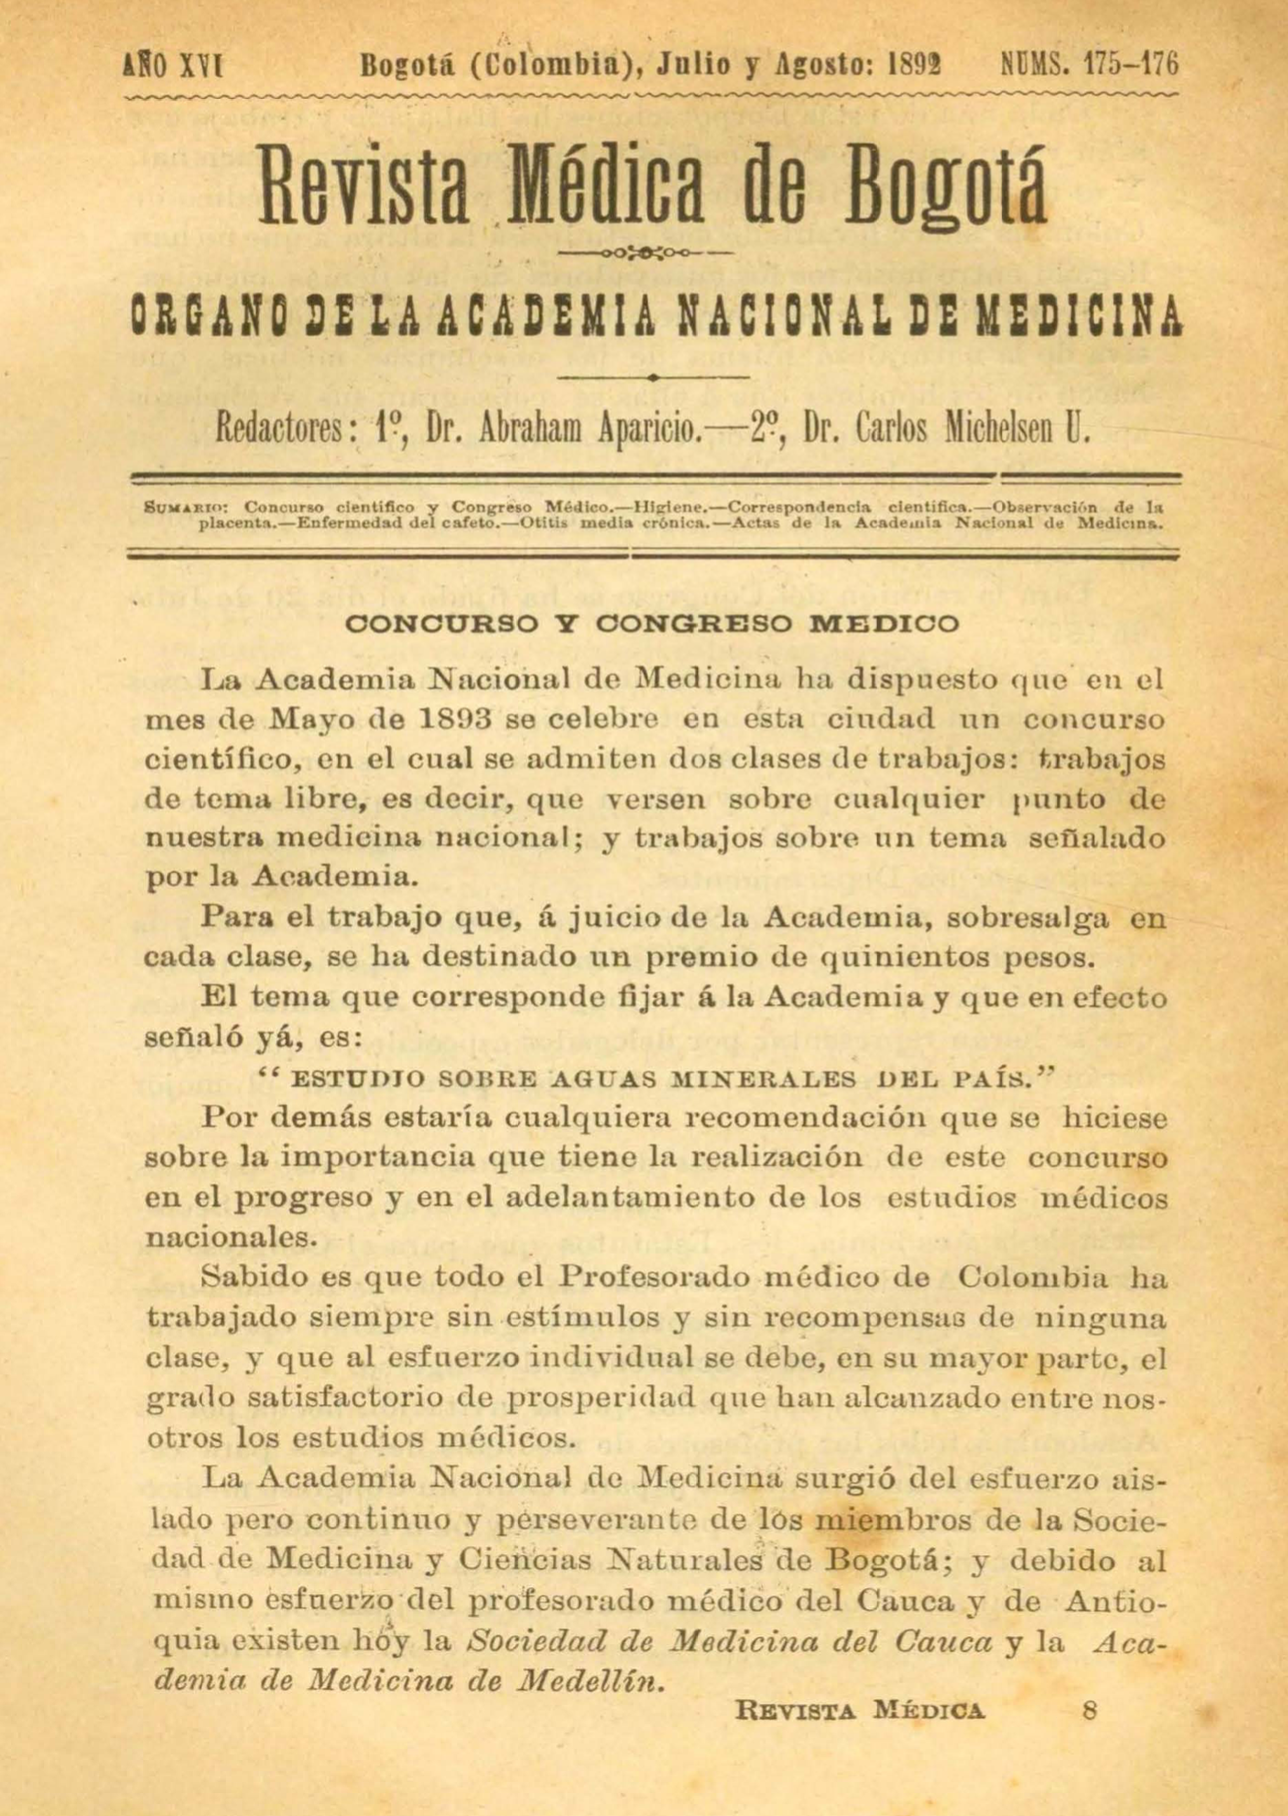 					Ver Vol. 16 Núm. 175-176 (1892): Revista Médica de Bogotá. Serie 16. Julio-Agosto de 1892. Núm. 175-176
				